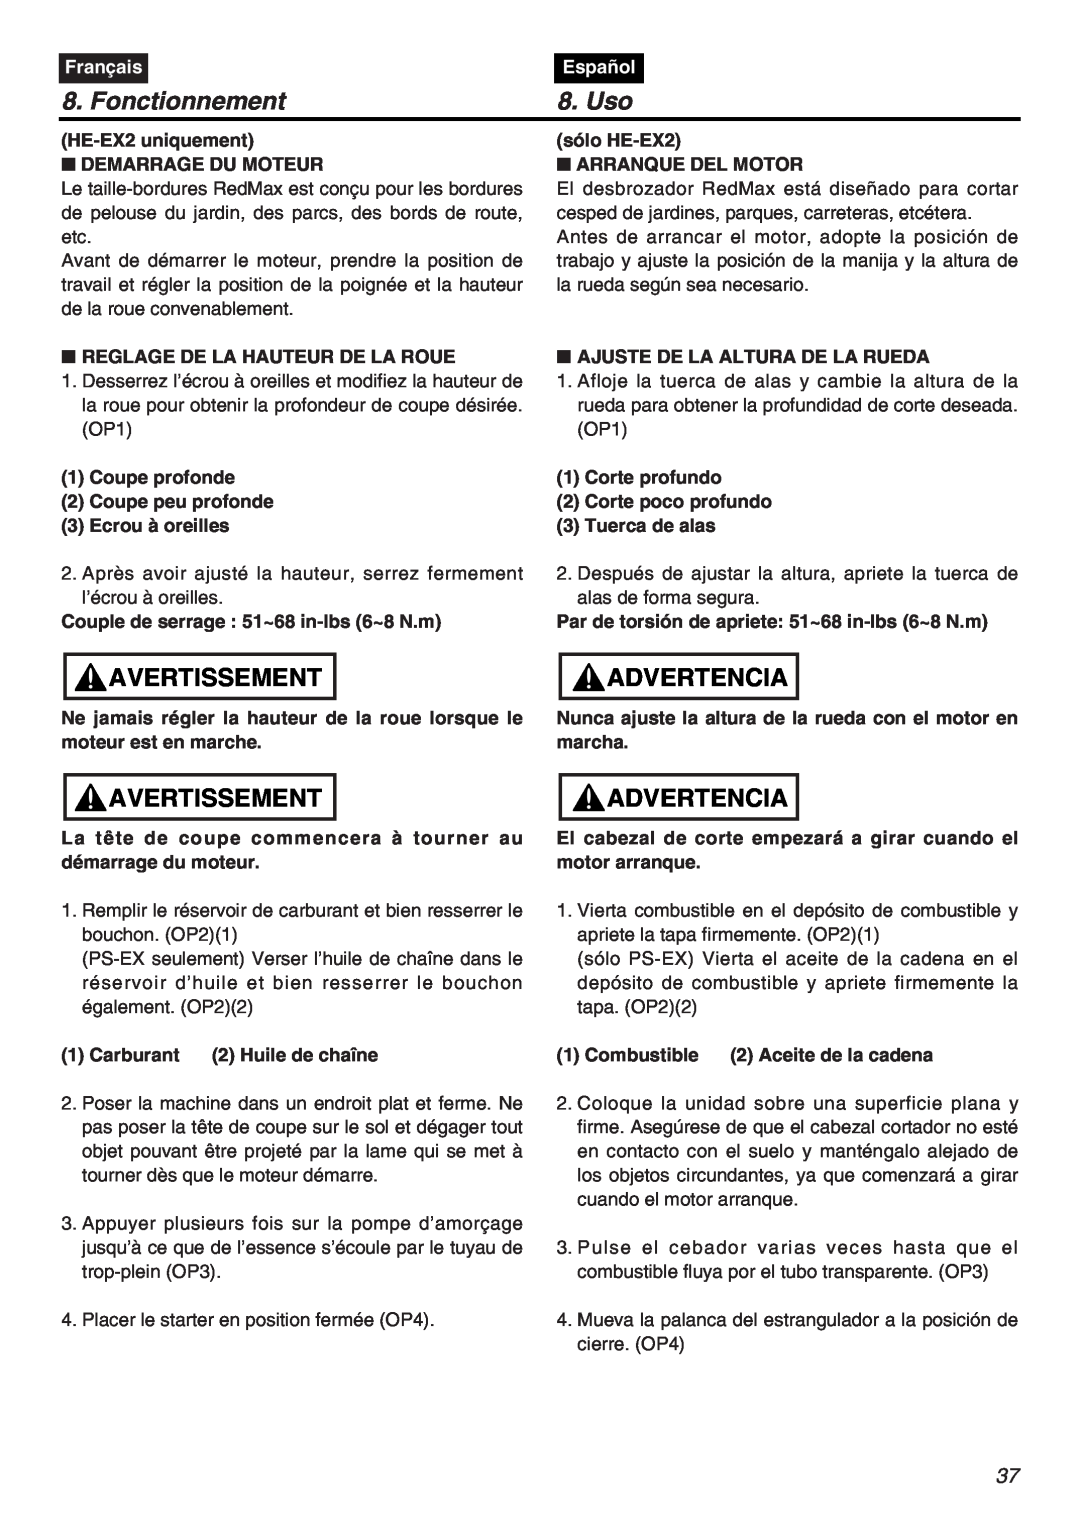 RedMax EXZ2401S-PH-CA manual Fonctionnement, Uso, Avertissement, Advertencia, Français, Español 